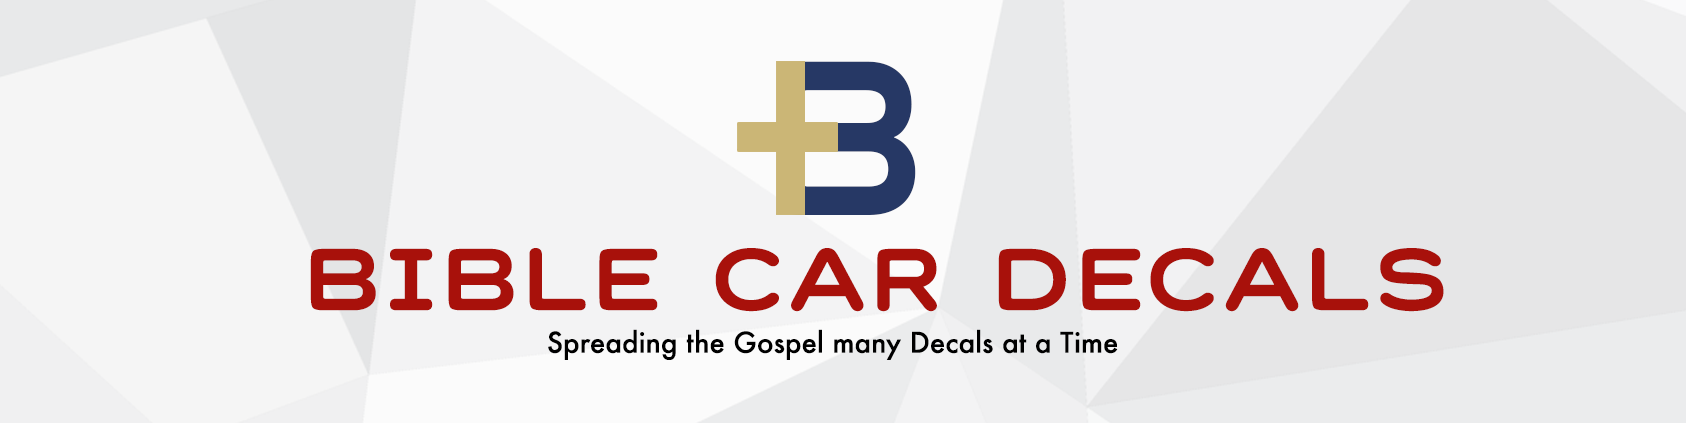 Bible Car Decals Logo